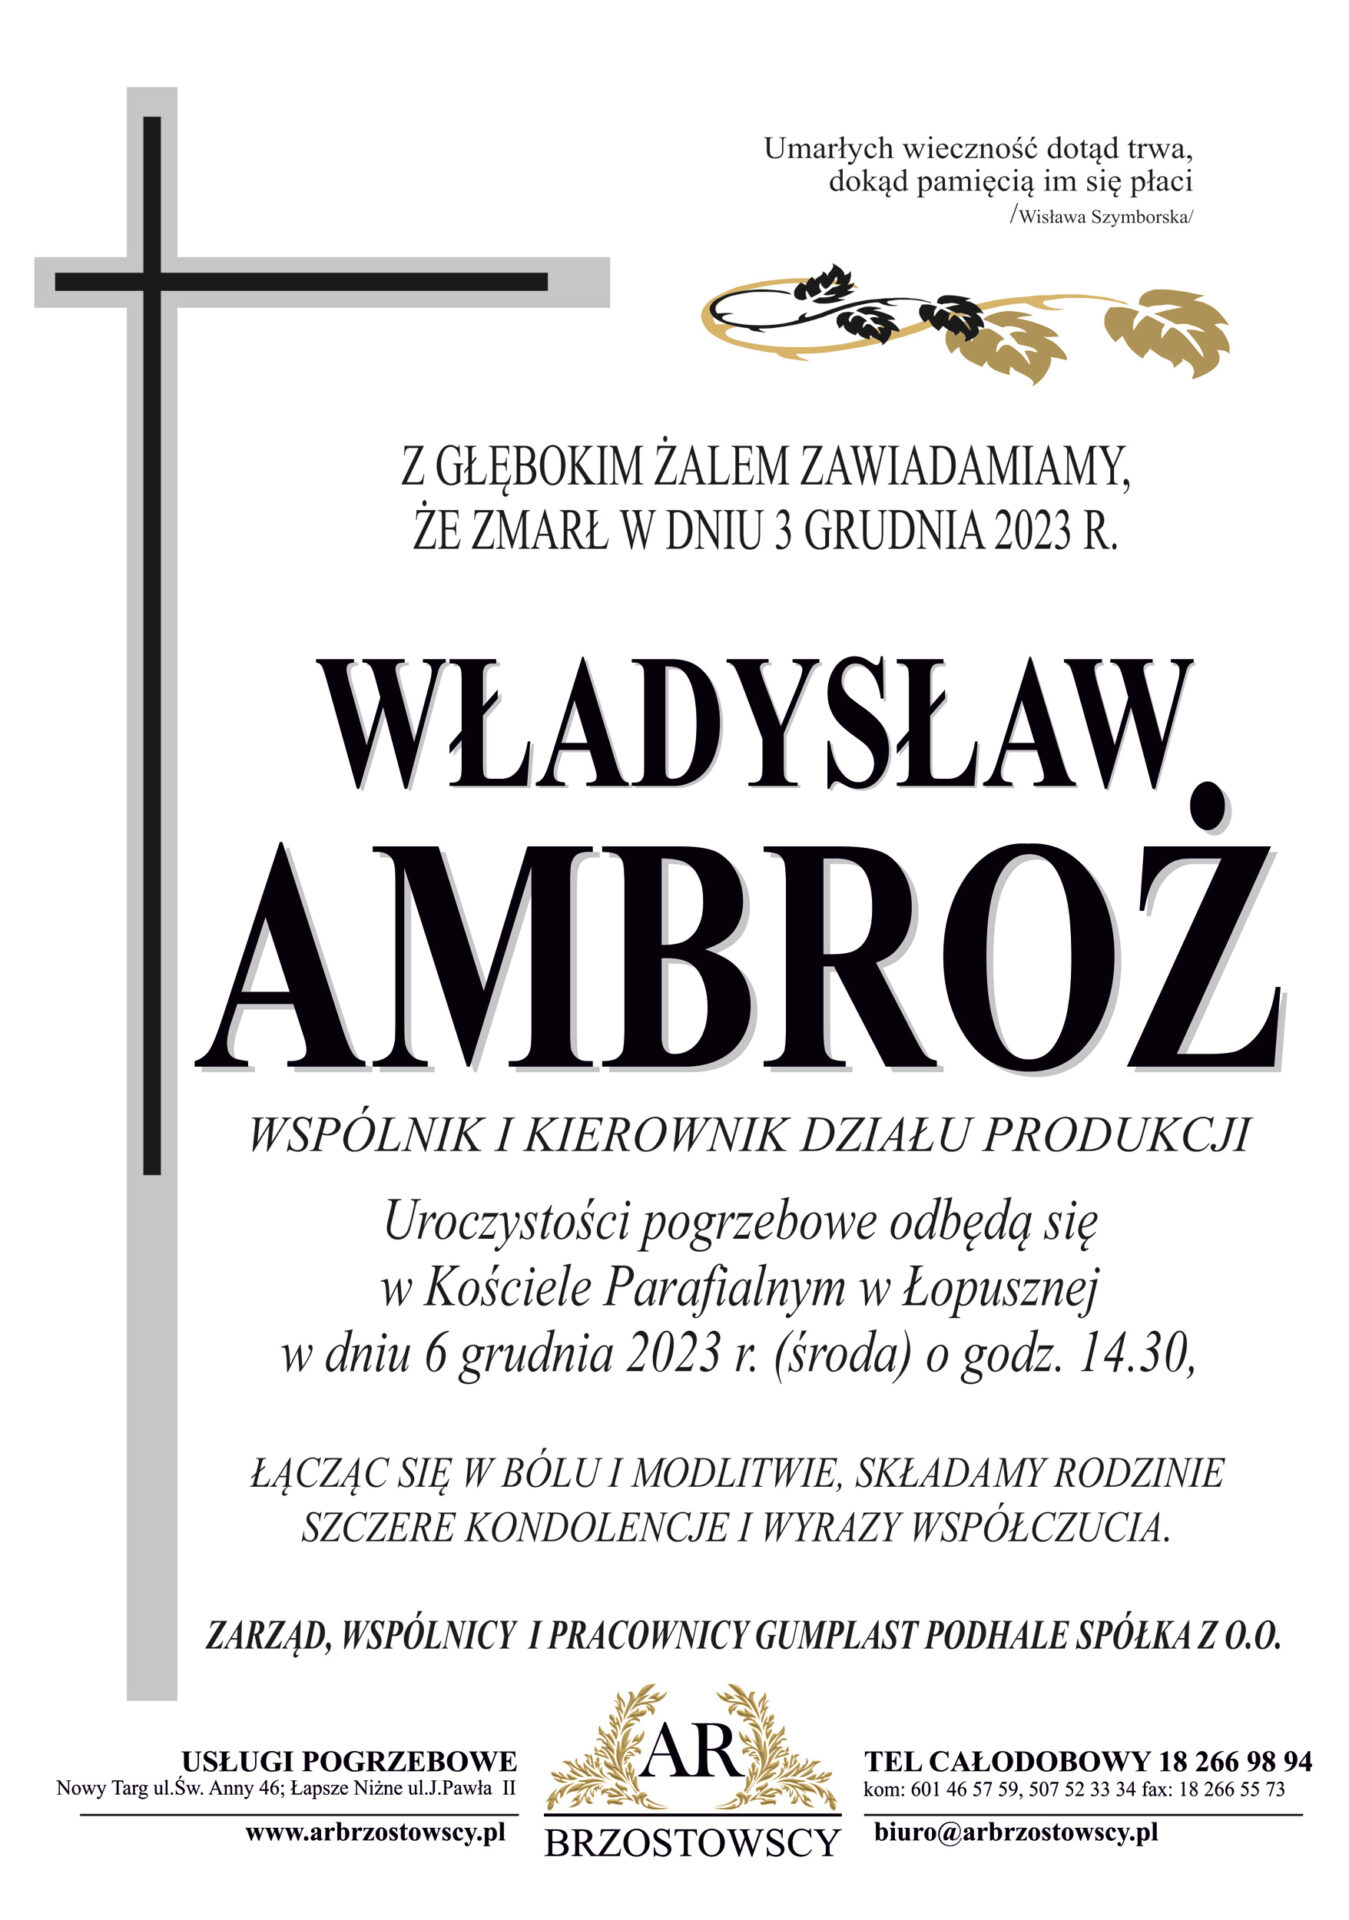 Władysław Ambroż